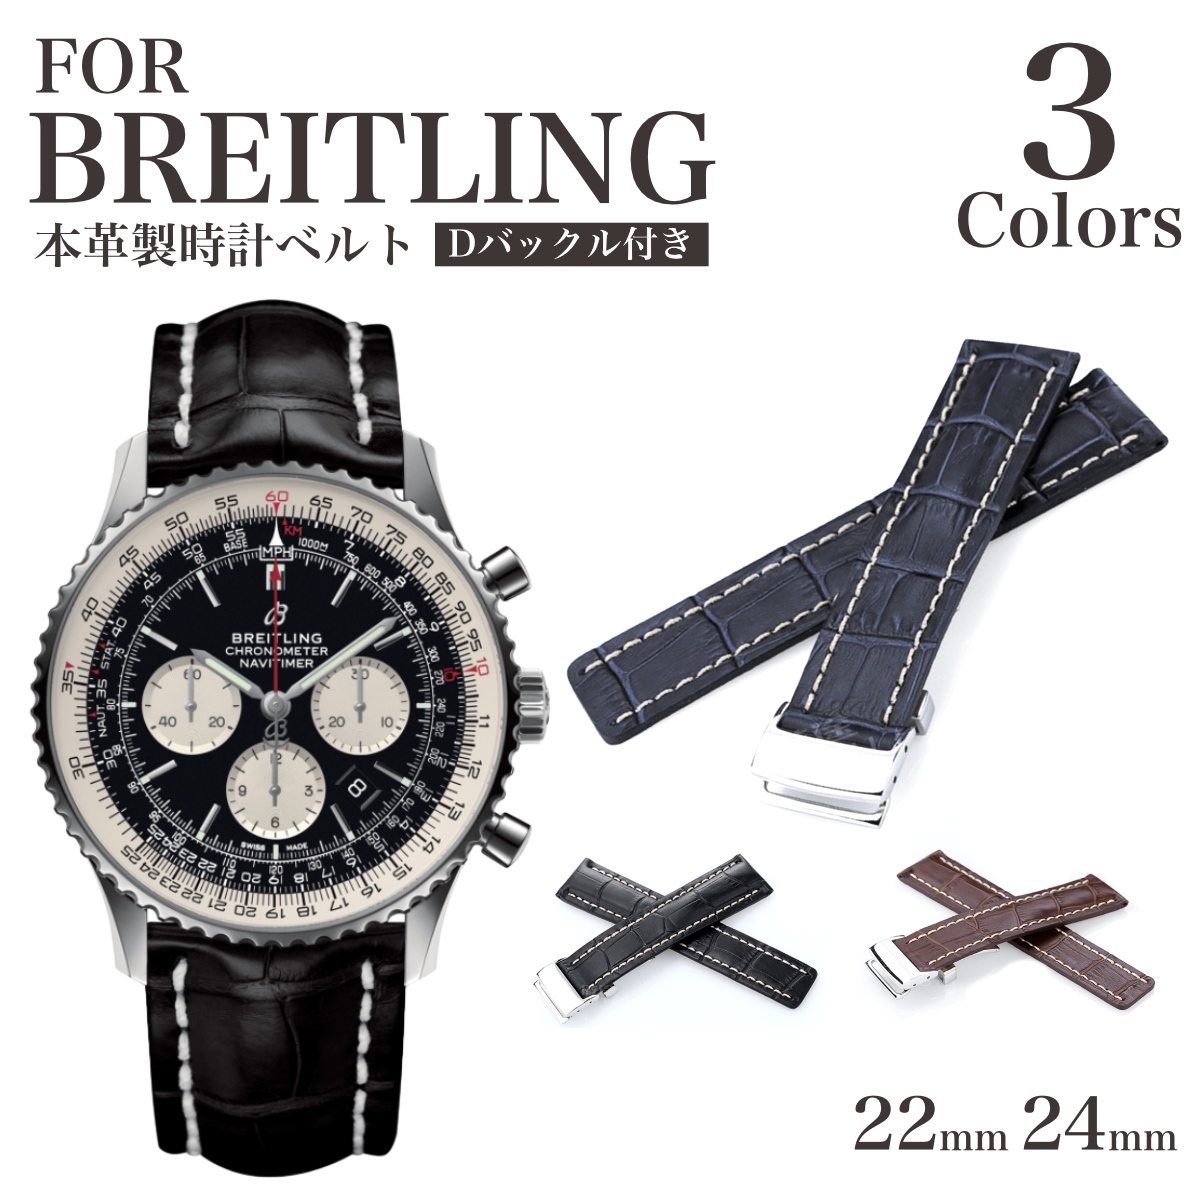 楽天市場 For Breitling Dバックル付き 本革製 クロコダイル型押し 時計ベルト 時計バンド 11straps ブライトリング クロノマット ナビタイマー スーパーオーシャンにピッタリ 11straps 楽天市場店